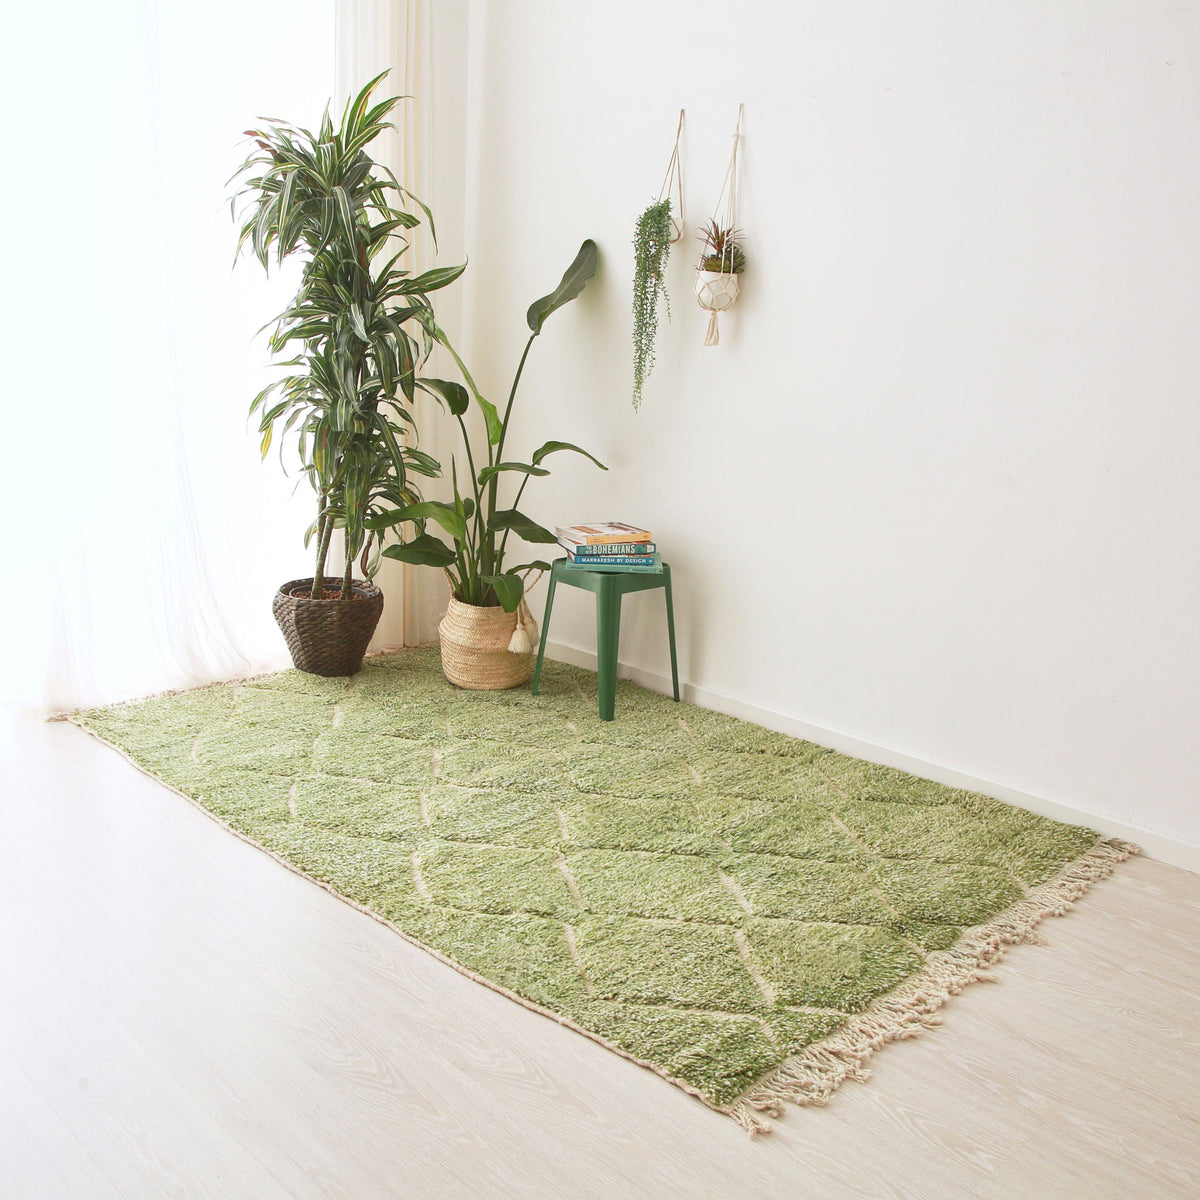 Tappeto beni mrirt in lana tinta di verde disteso sul pavimento. Sul tappeto ci  sono due piante e un sgabello in metallo con sopra dei libri